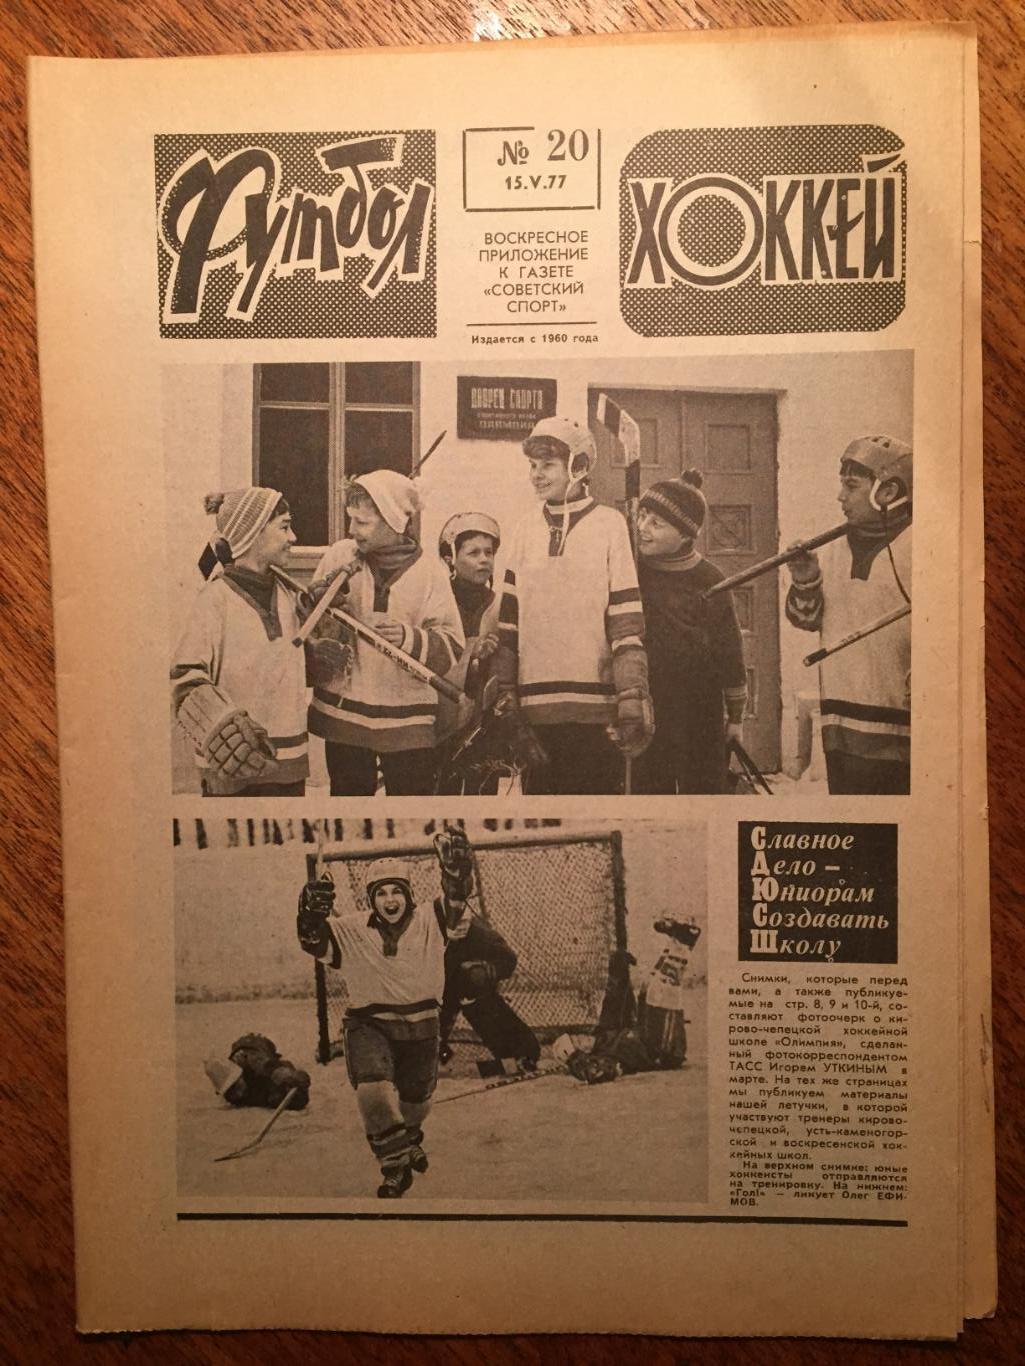 Футбол-Хоккей №20 1977